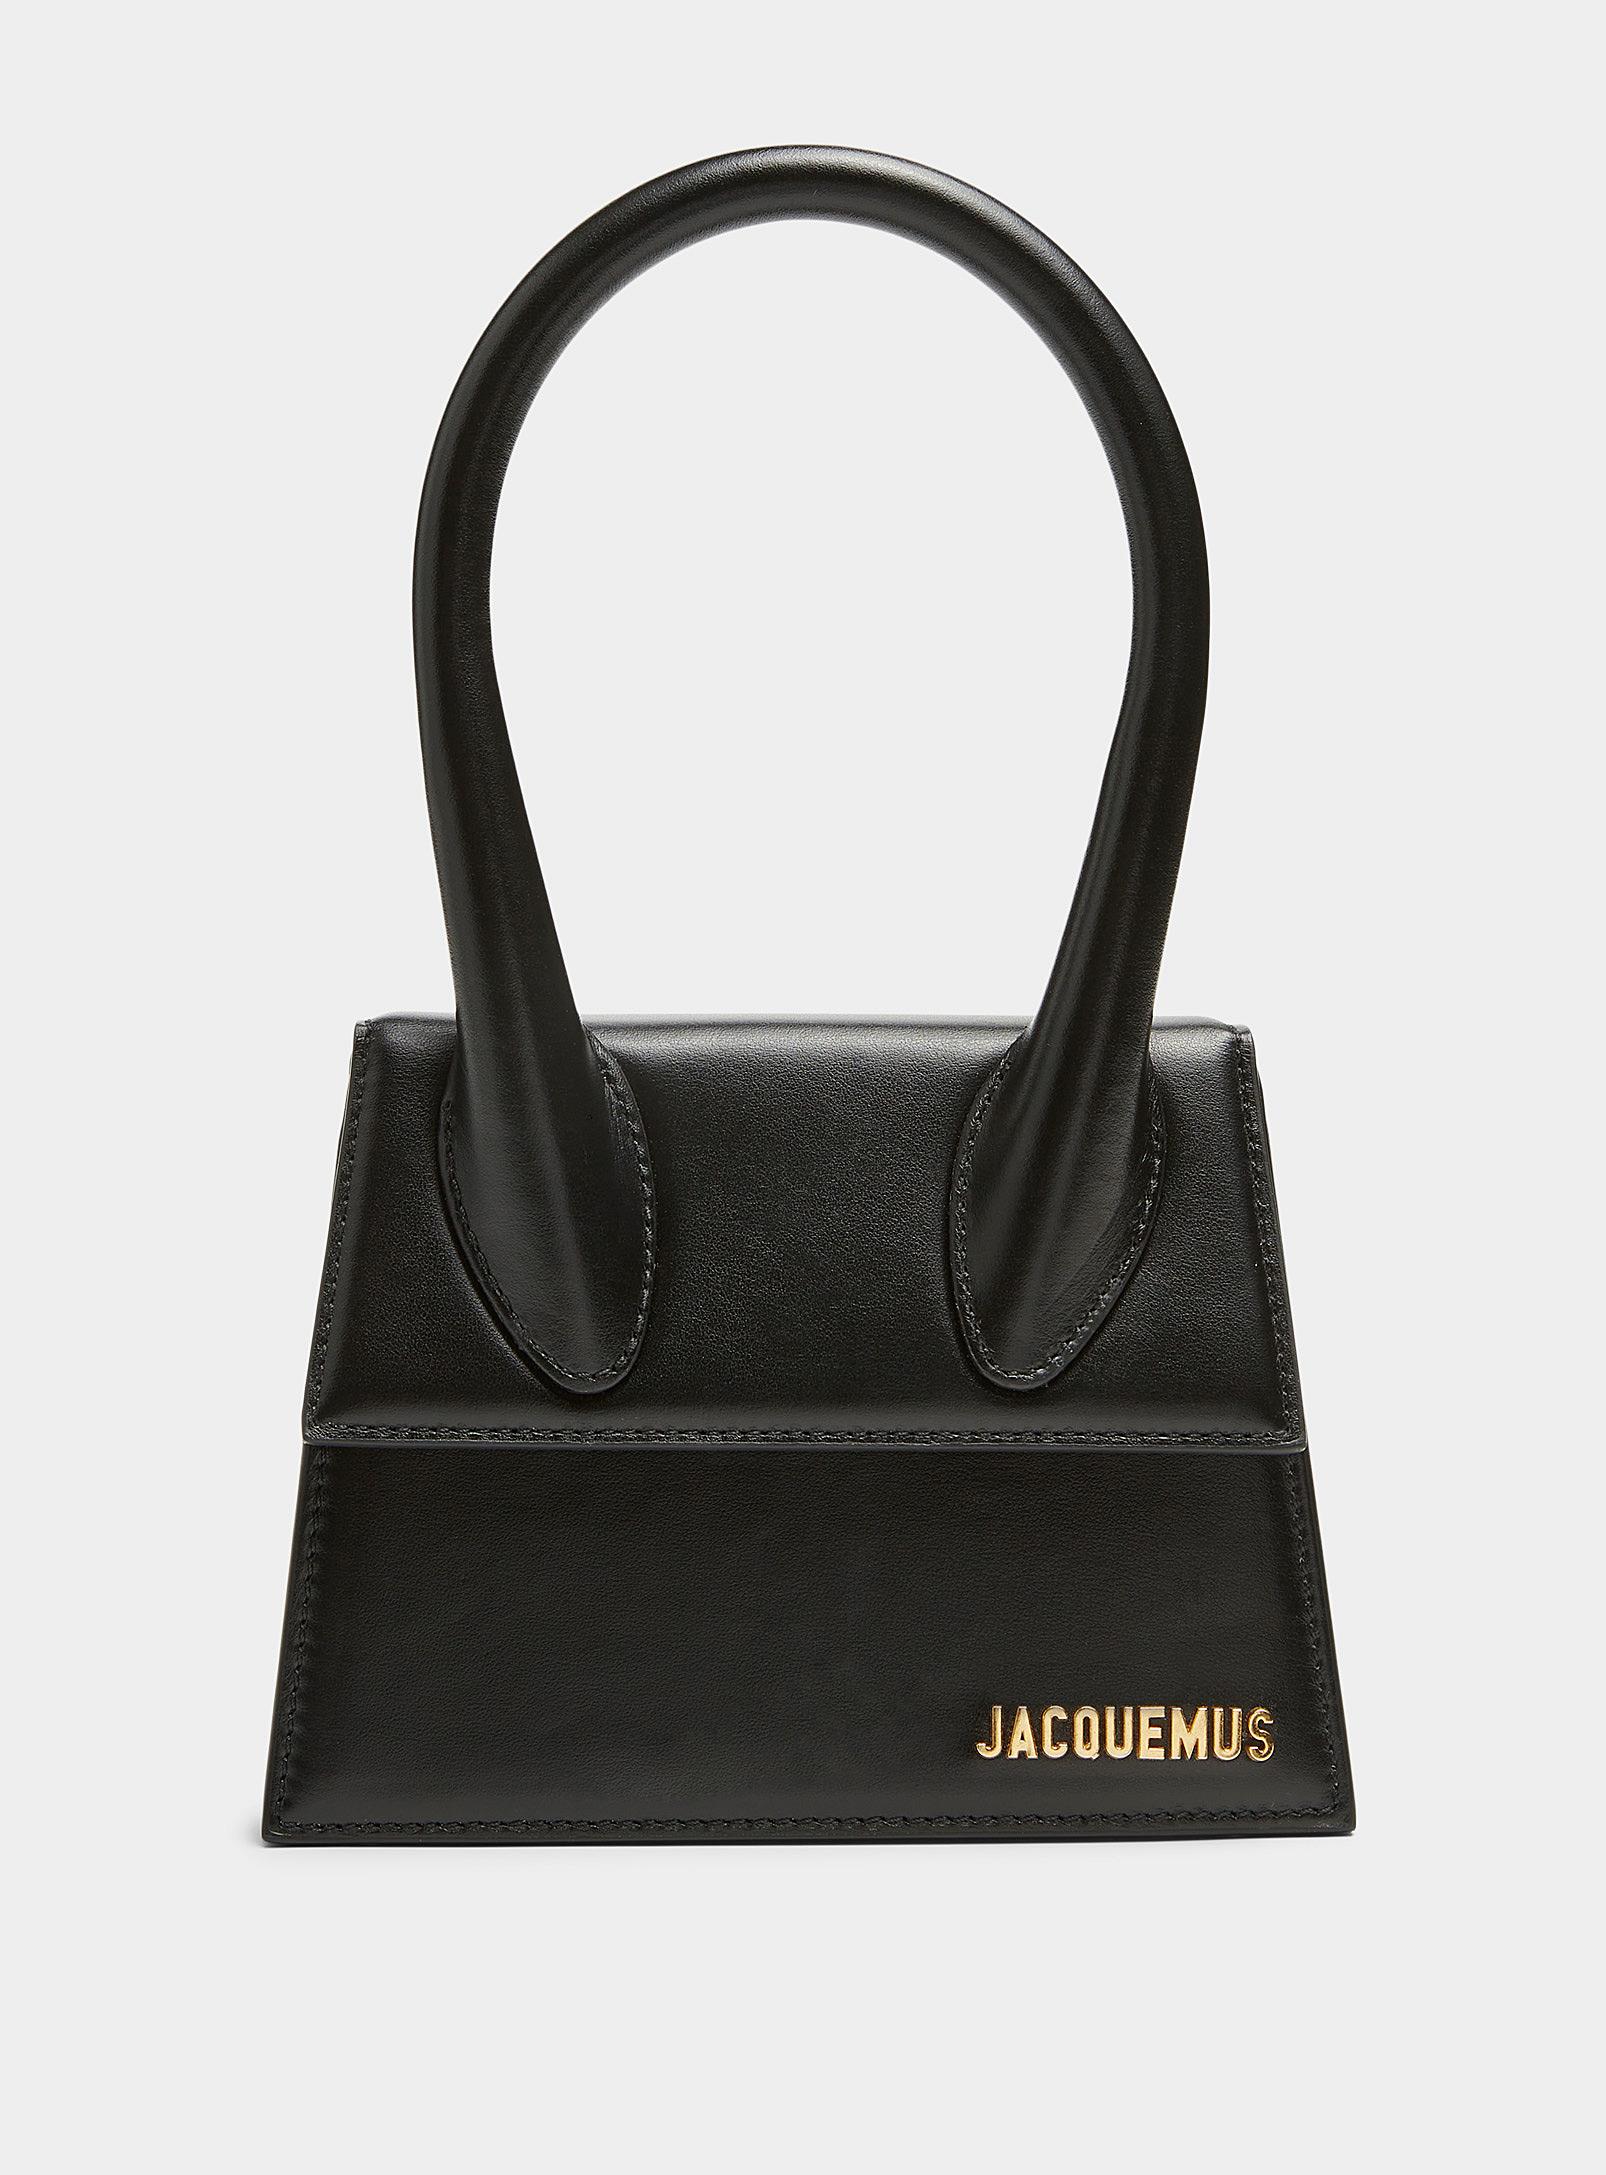 Jacquemus Medium Chiquito Bag in Black | Lyst Canada